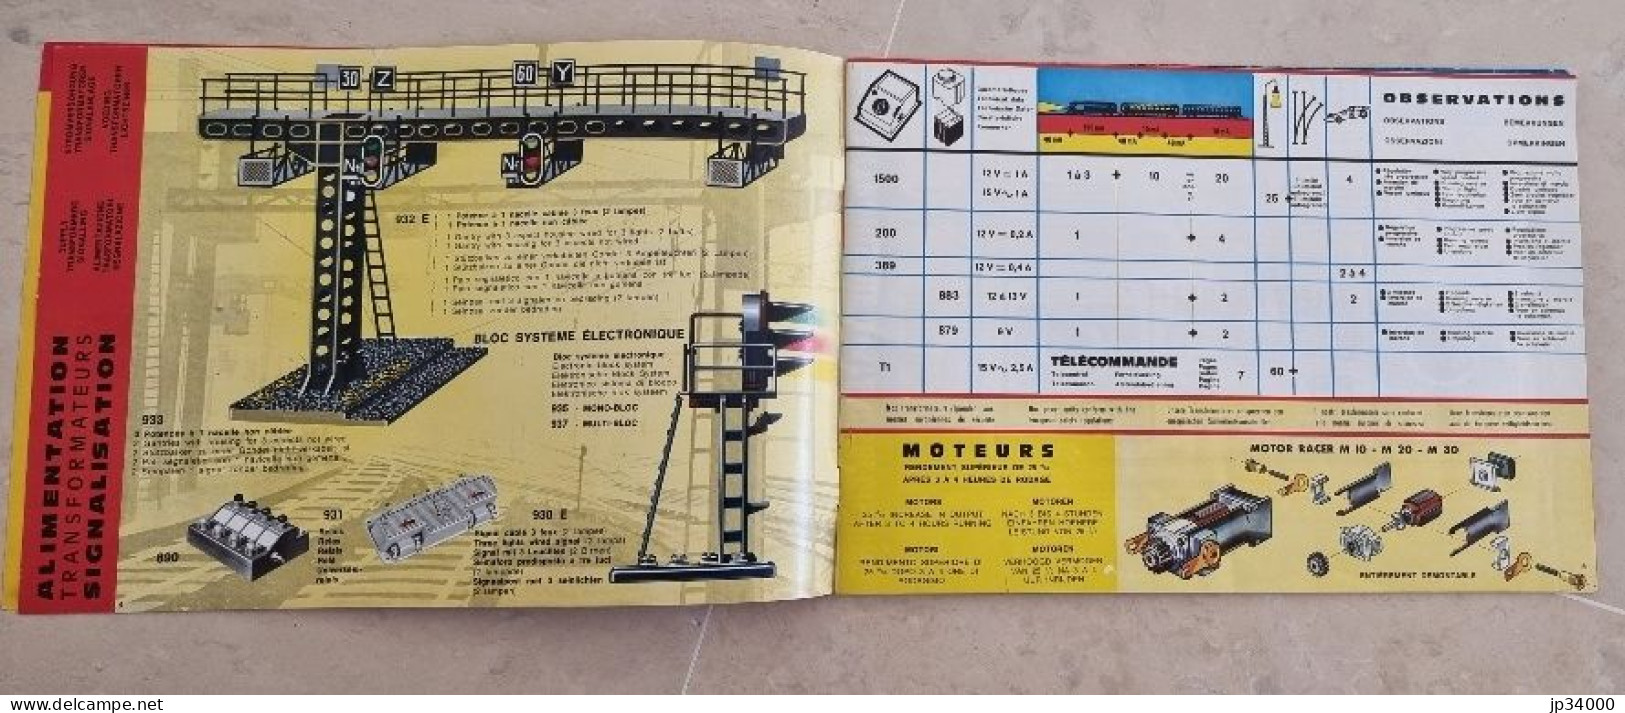 TELECOMMANDE ELECTRONIQUE (Jouef HO) Complet 32 Pages, 1969-70 (Trains Electriques) - Literature & DVD